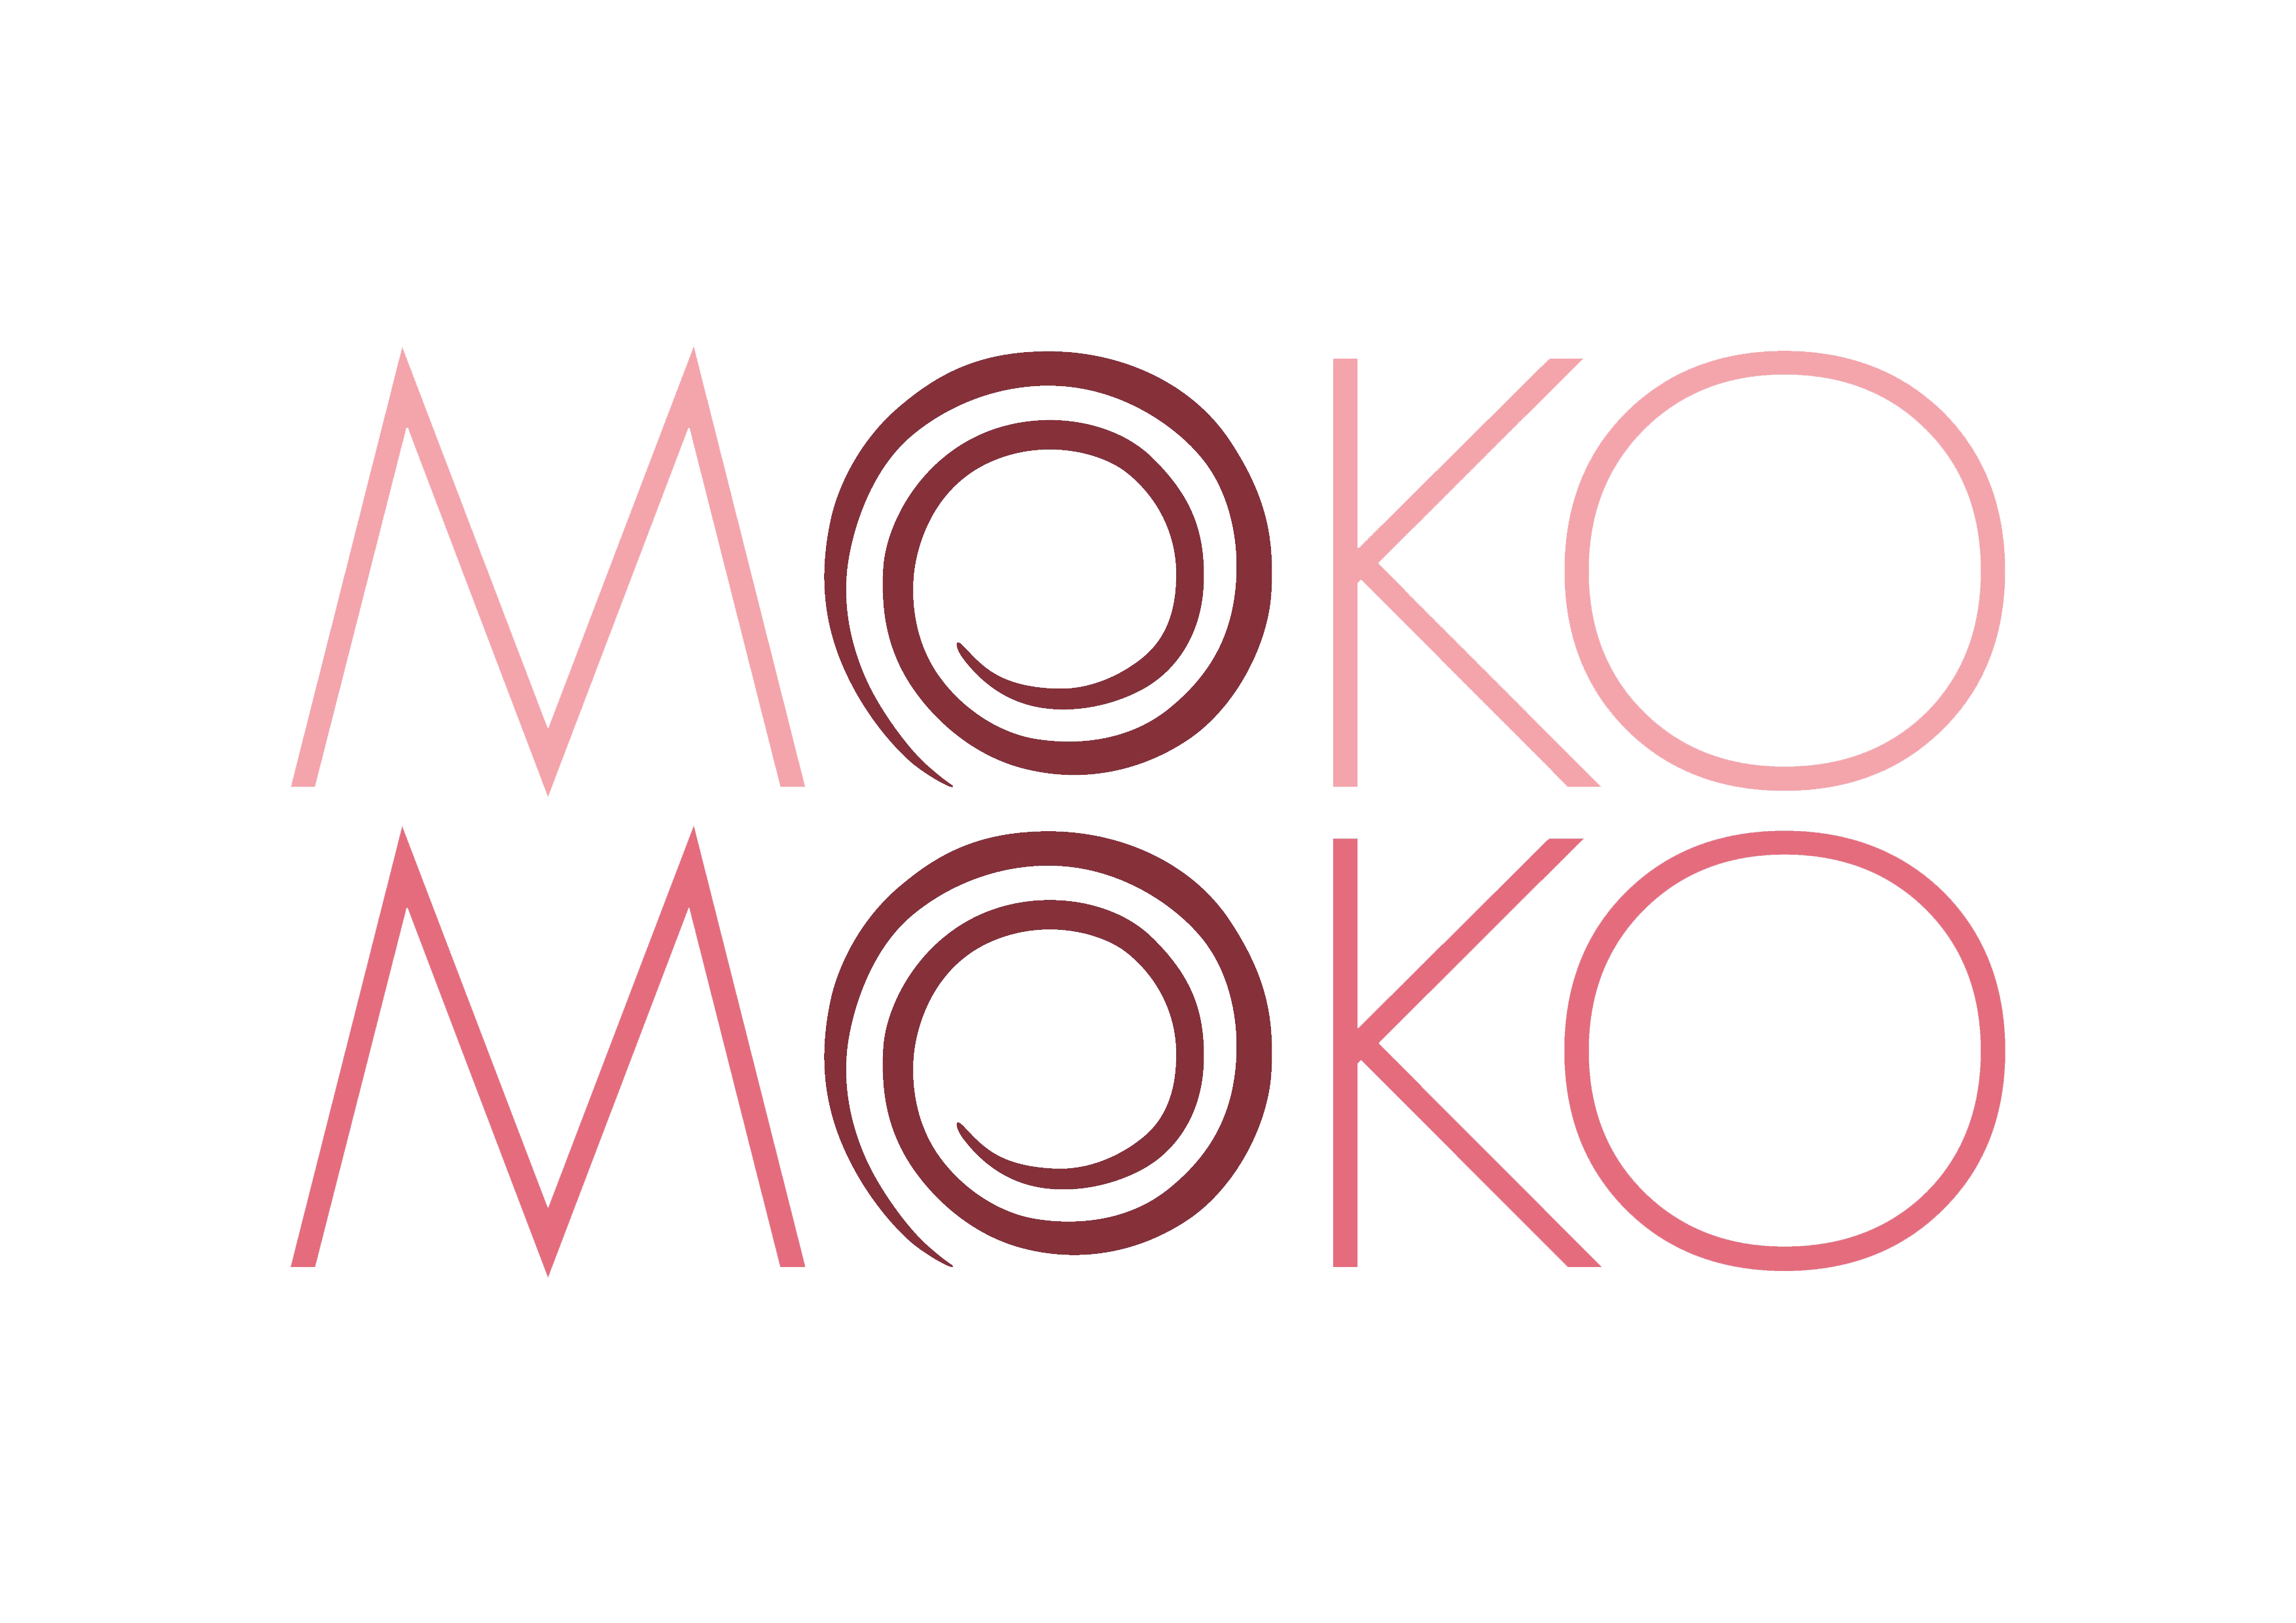 190314115553 Logo Moko Moko 3 warna 01 1